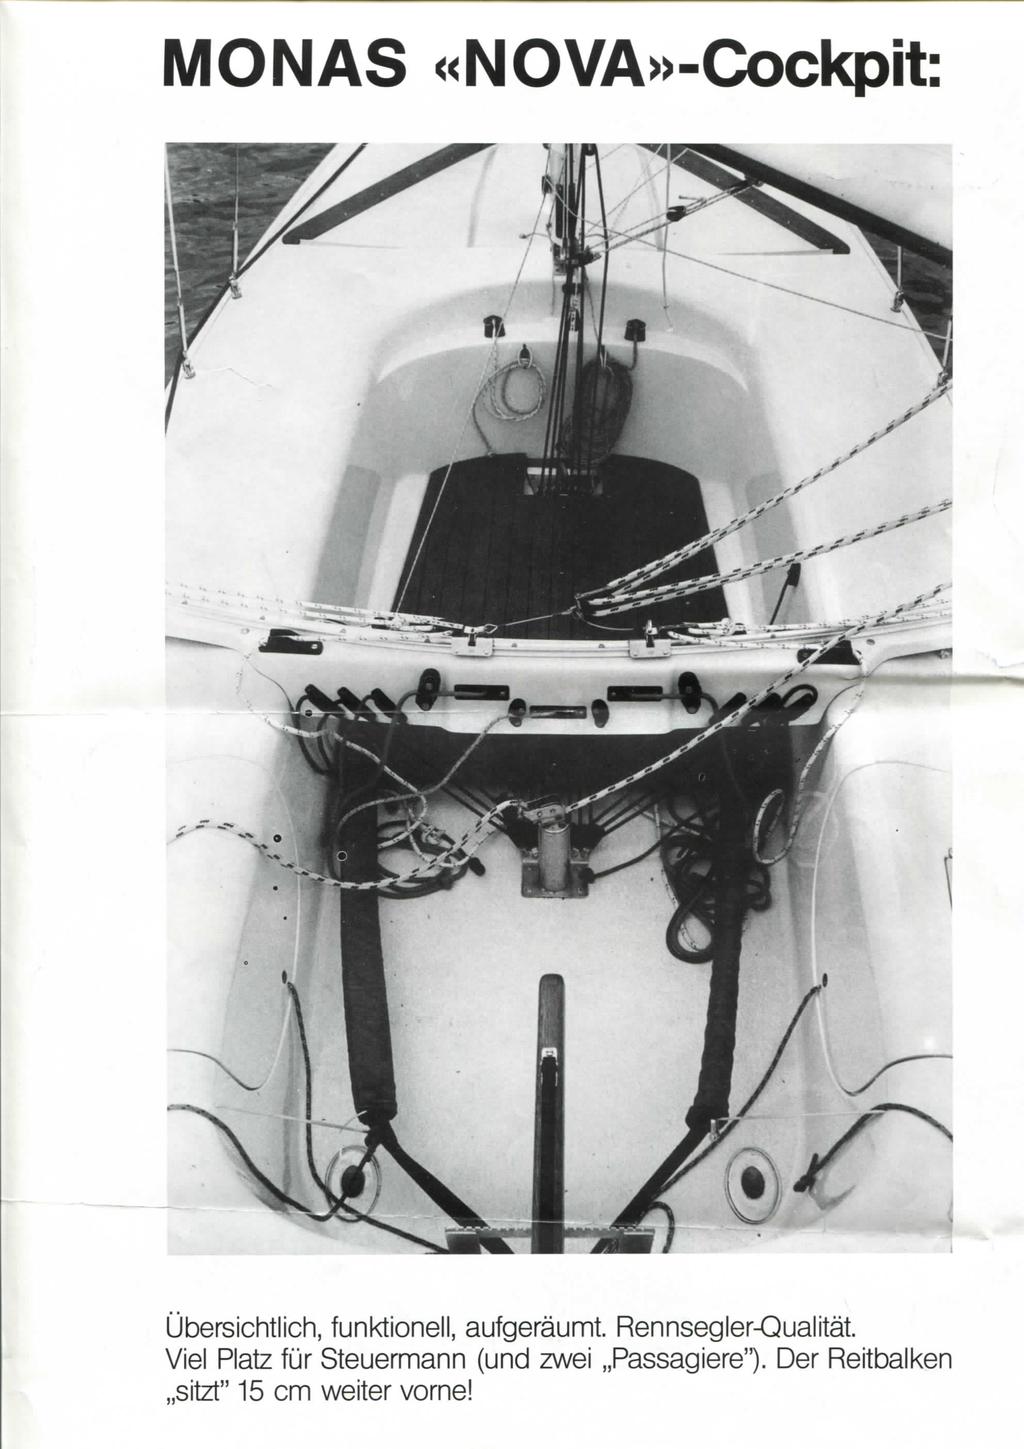 MONAS «NOVA»-Cockpit Ubersichtlich, funktionell, aufgeraunnt. Rennsegler-Qualitat.